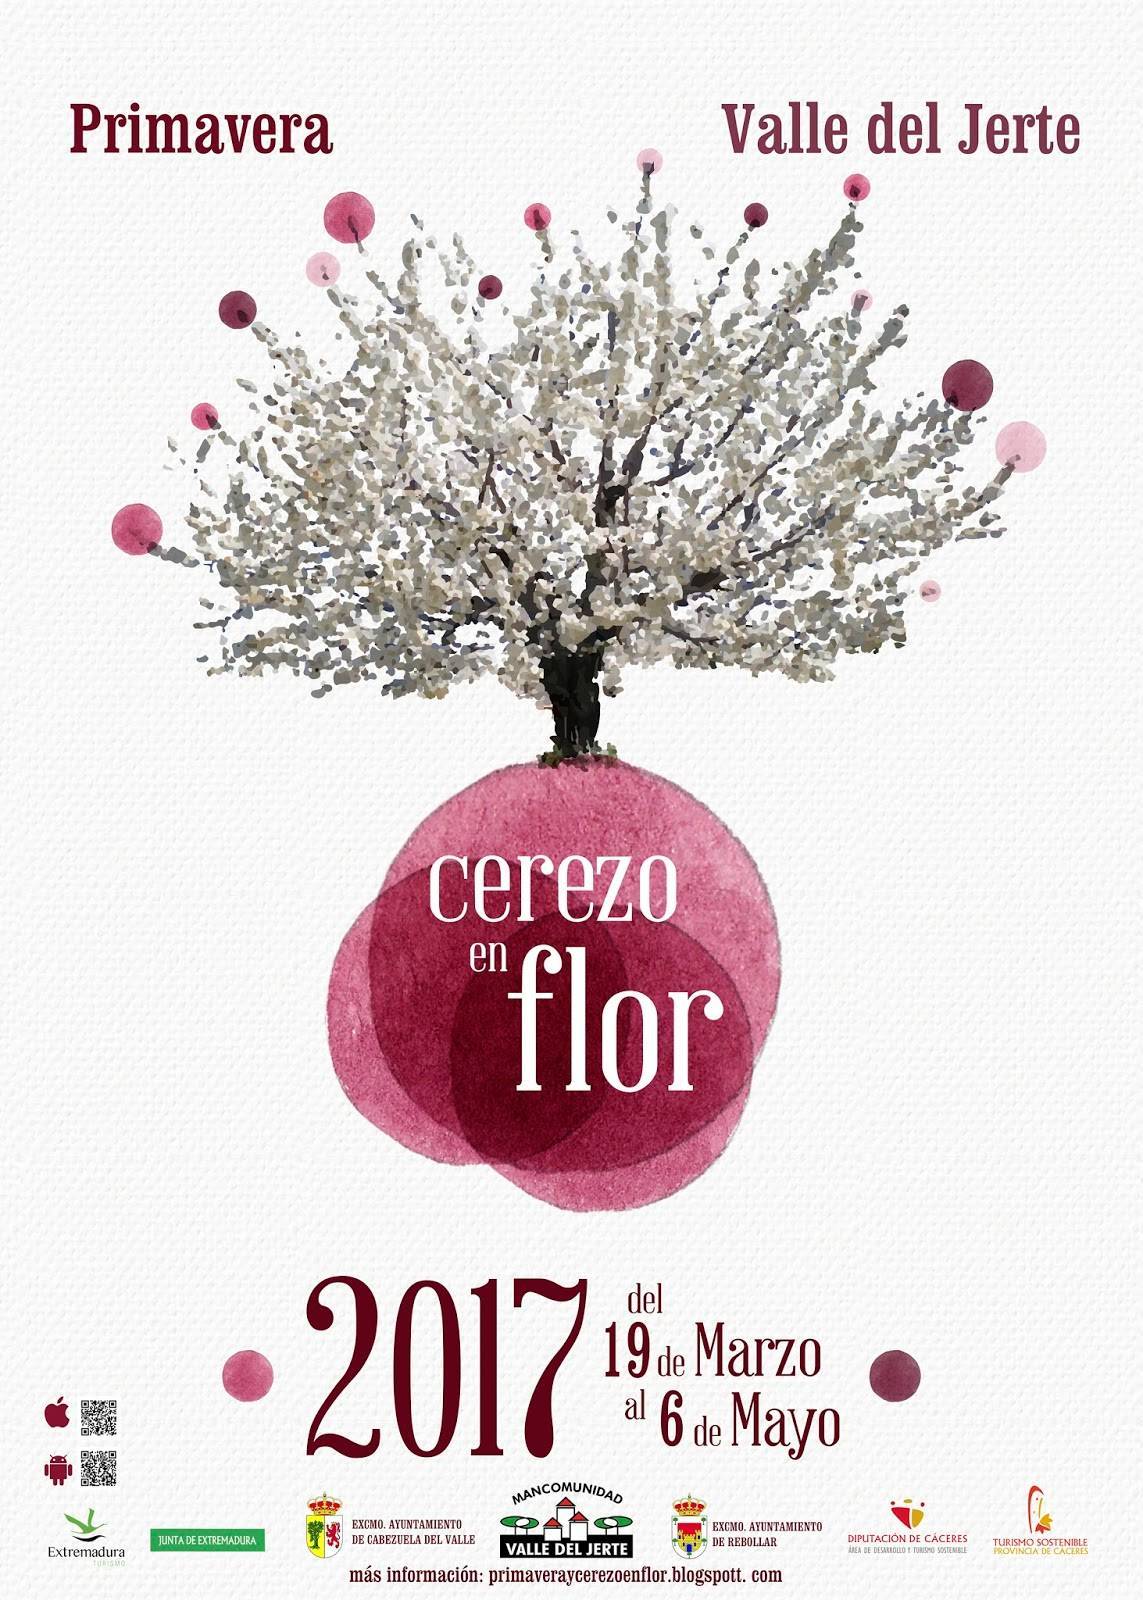 Cerezo en flor 2017 - Valle del Jerte